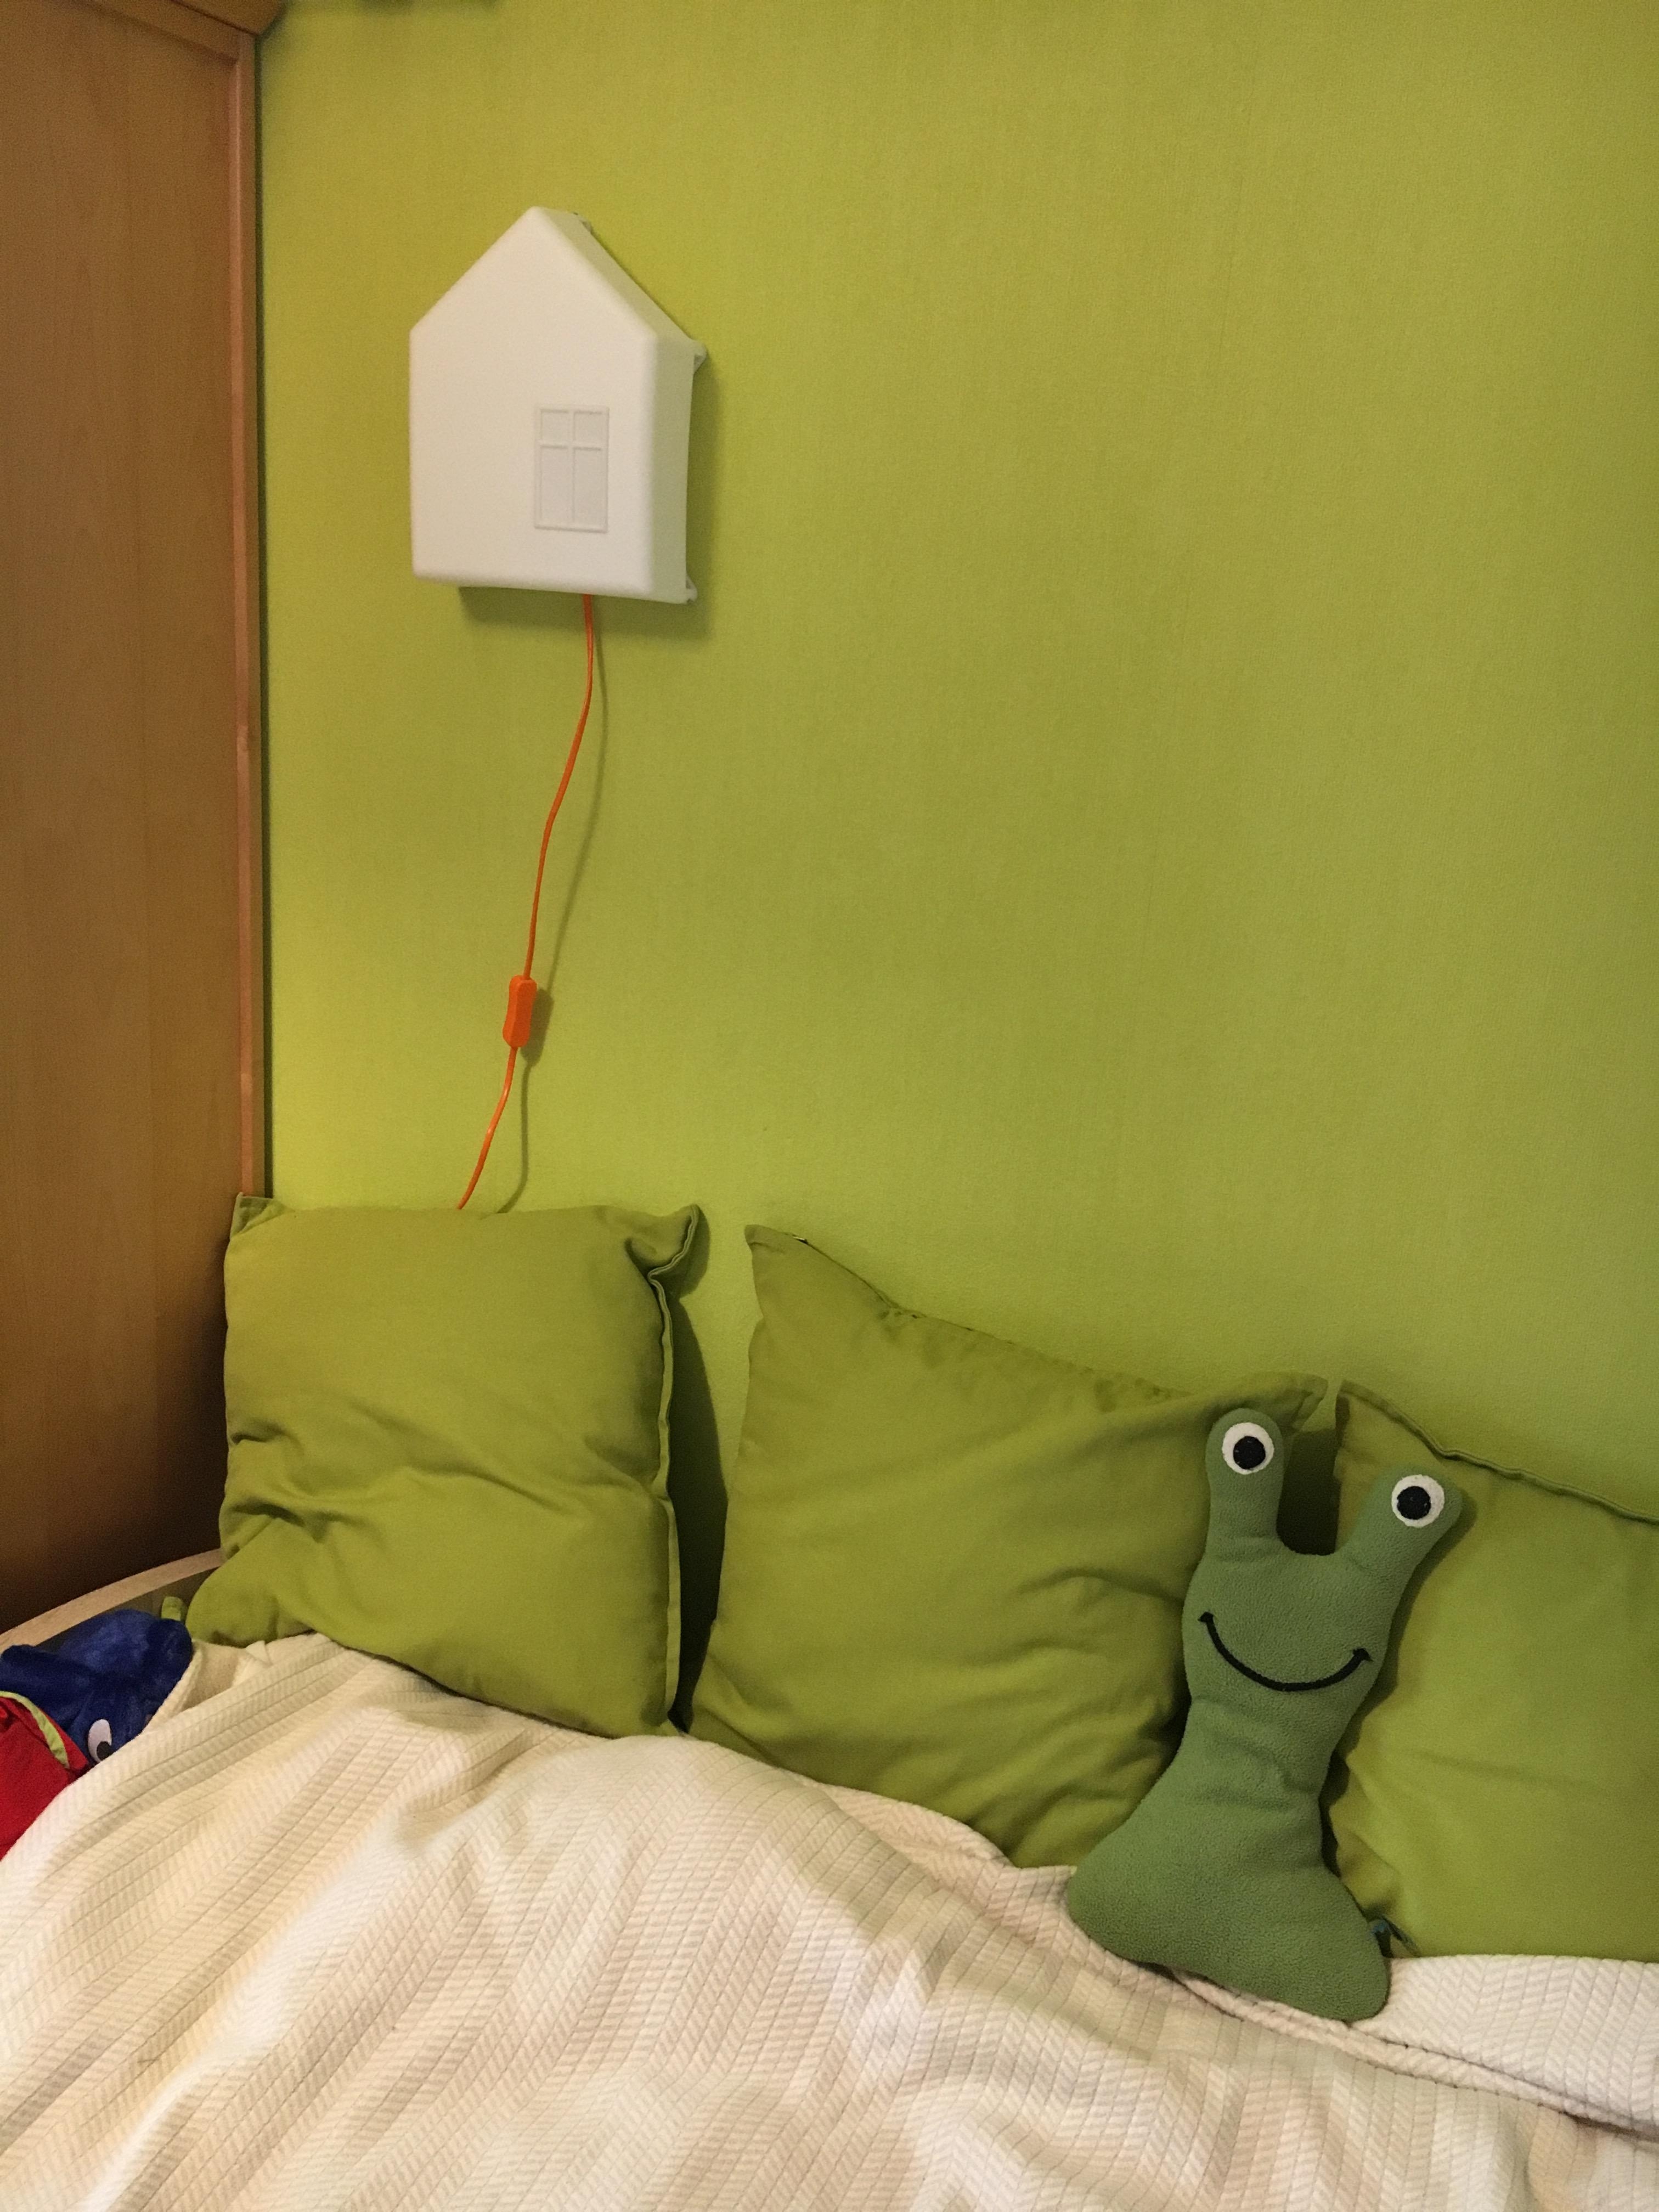 #livingchallenge #kinderzimmer Unser sign schläft im Zimmer mit grüner Wand und grünem Monster ;)